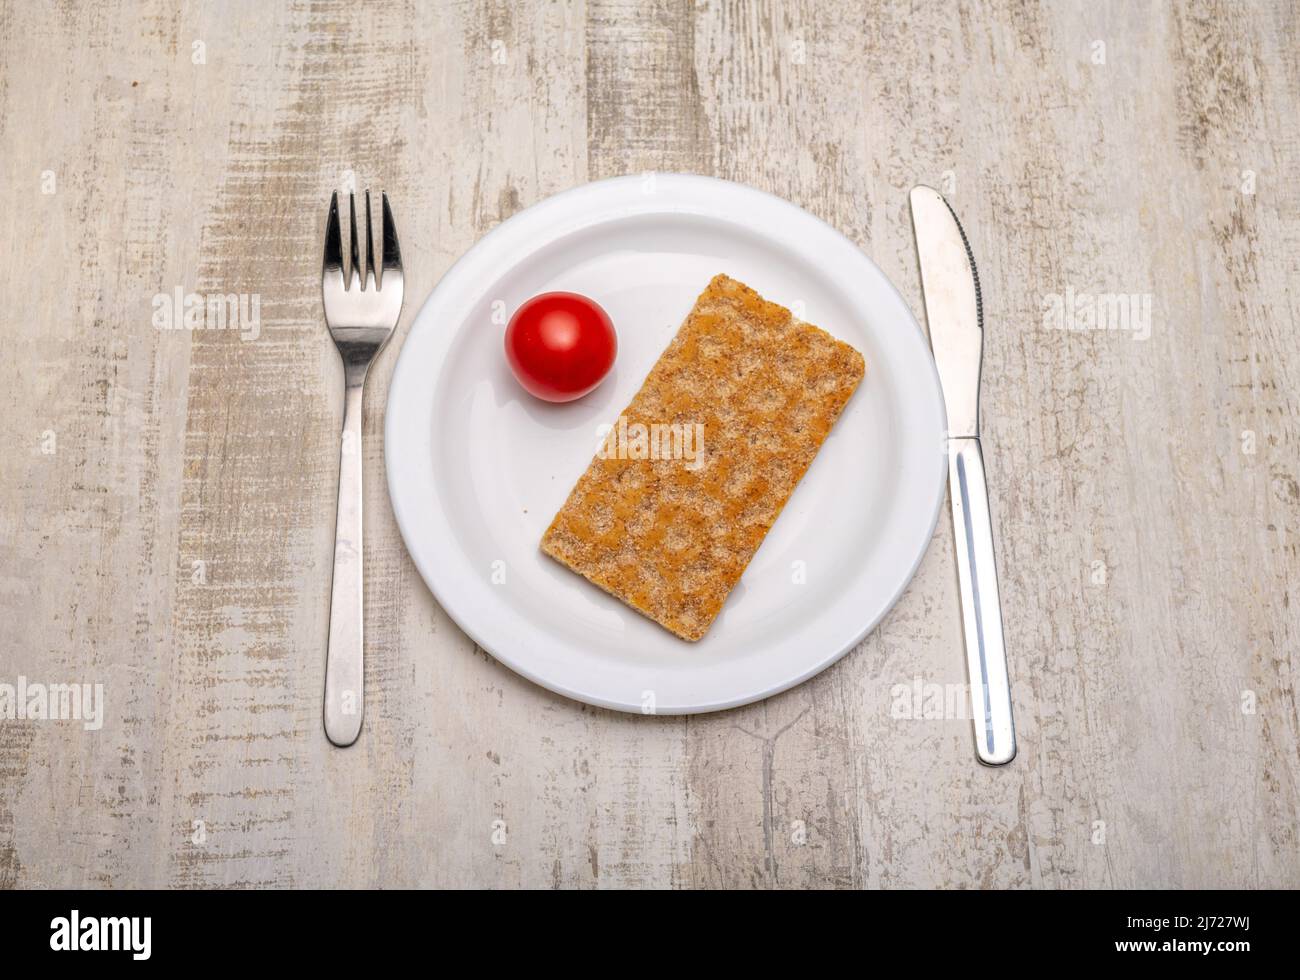 Eine einzelne Tomate und eine Scheibe Knäckebrot auf einem weißen Teller und Besteck mit Gebrauchsspuren auf einer rustikalen Holzoberfläche Stockfoto